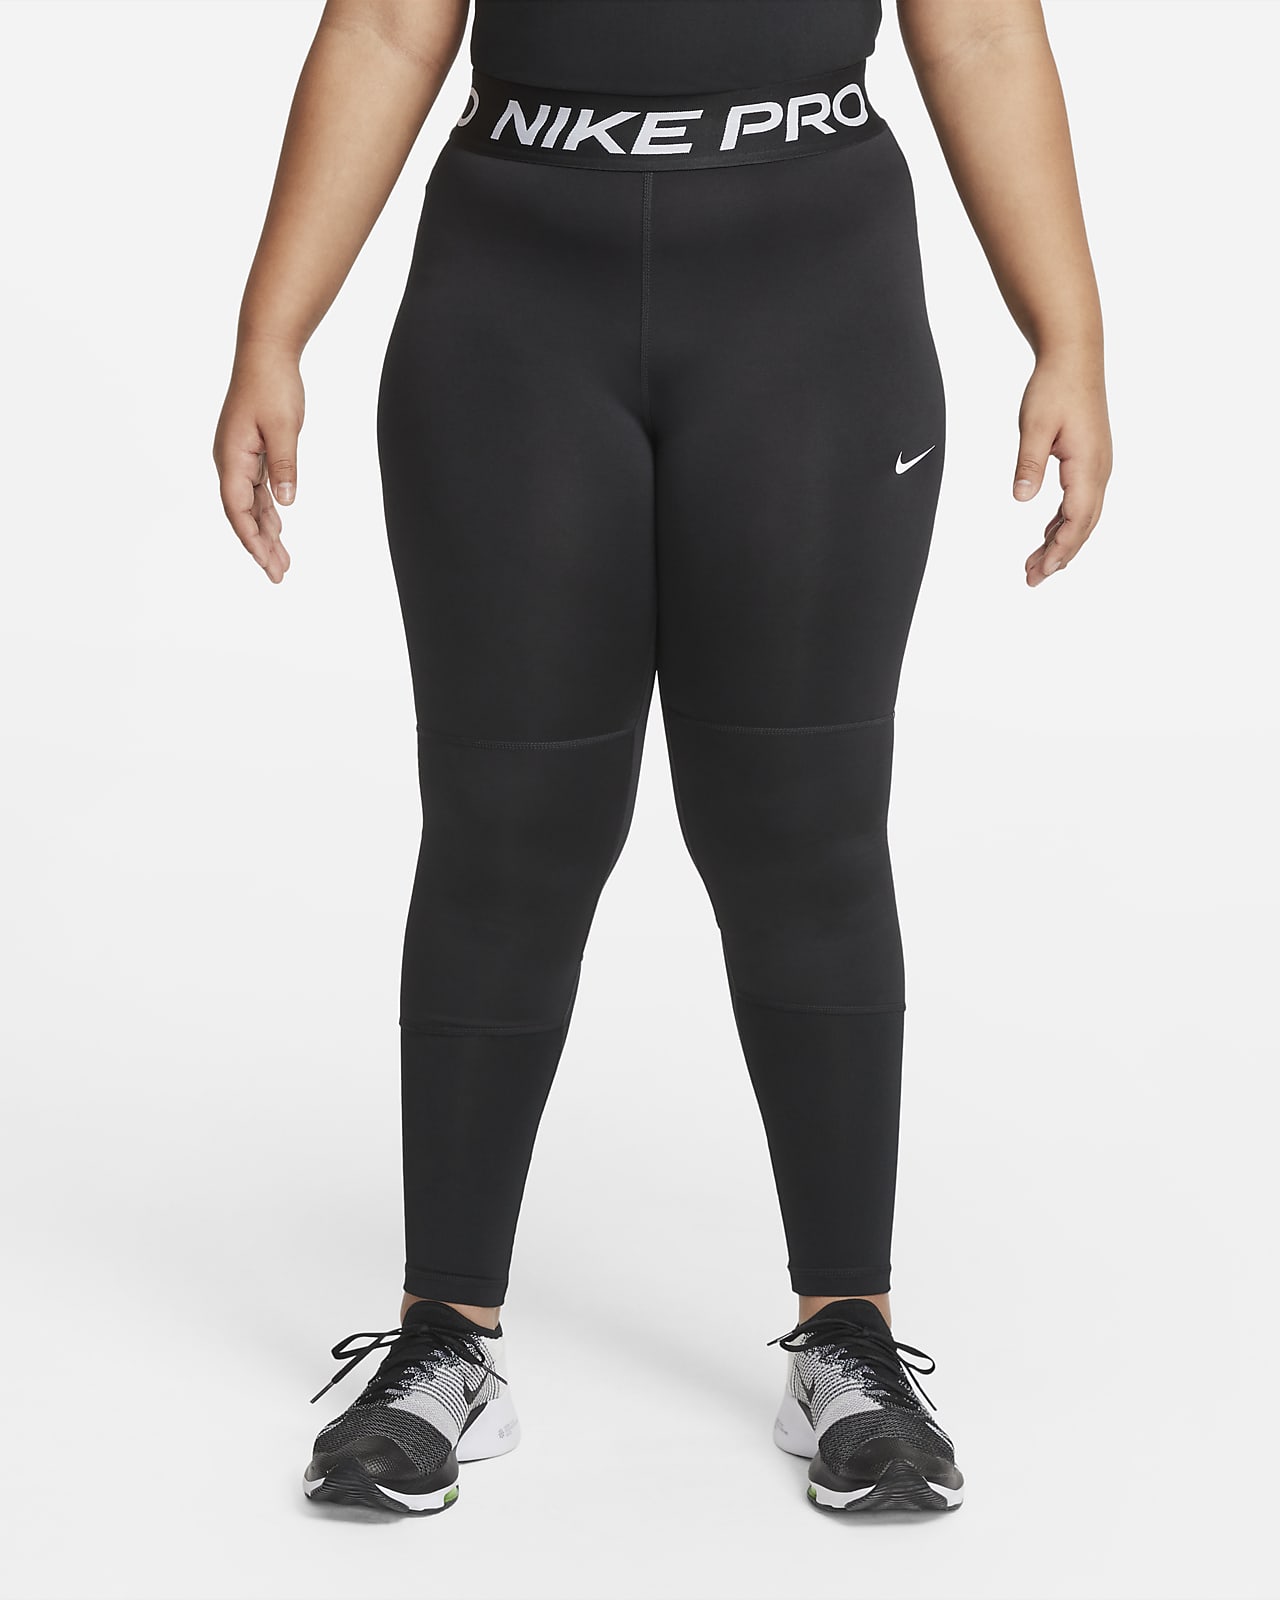 Κολάν Nike Pro για μεγάλα κορίτσια (μεγαλύτερο μέγεθος)